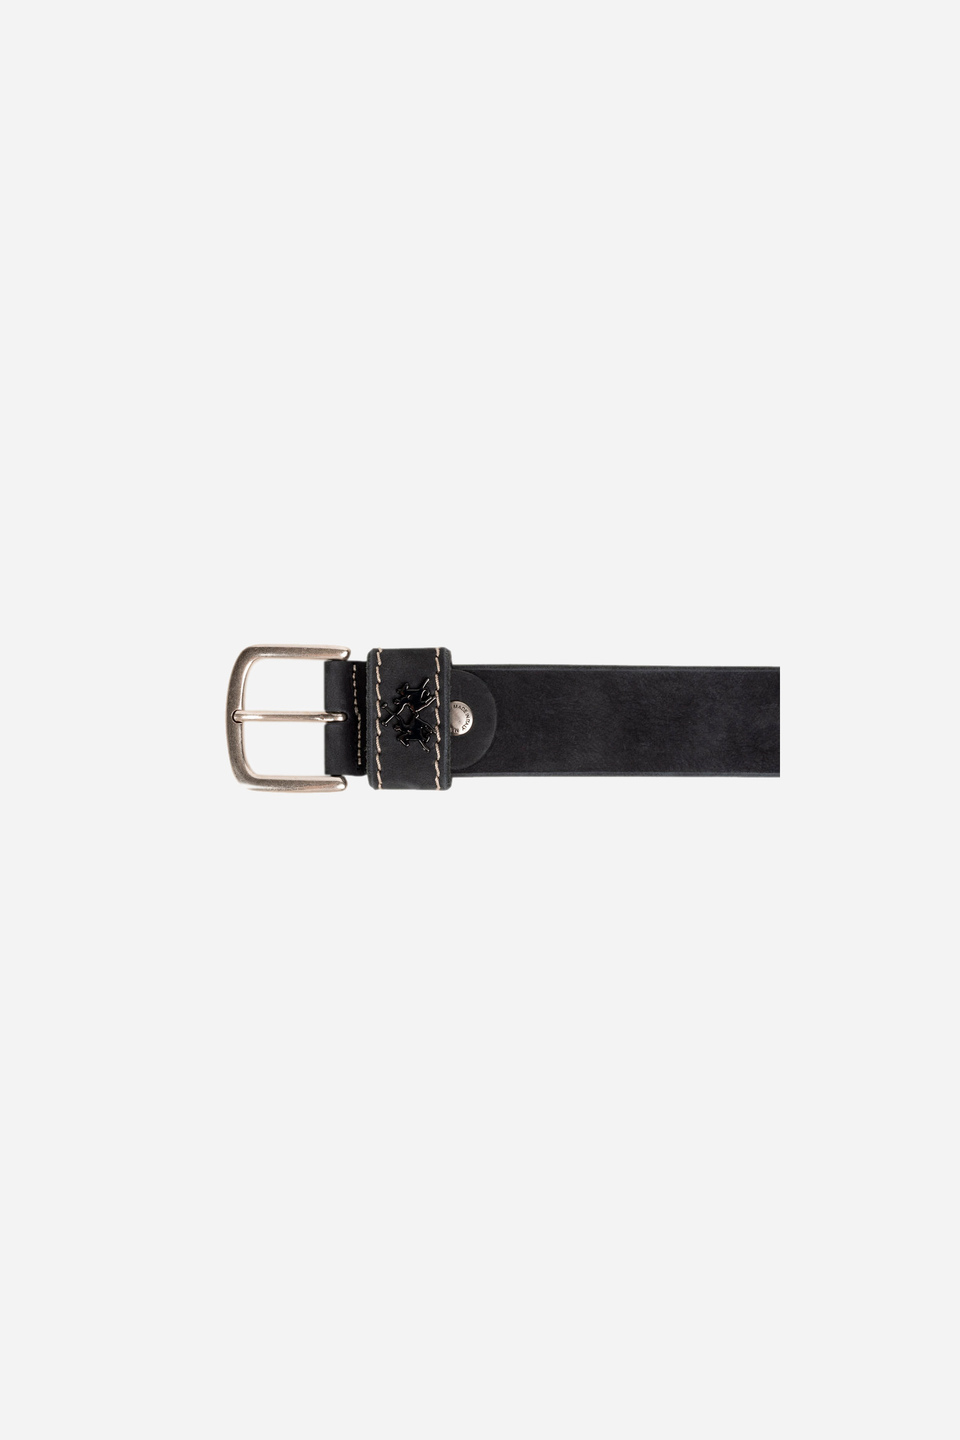 Black leather belt | La Martina - Official Online Shop